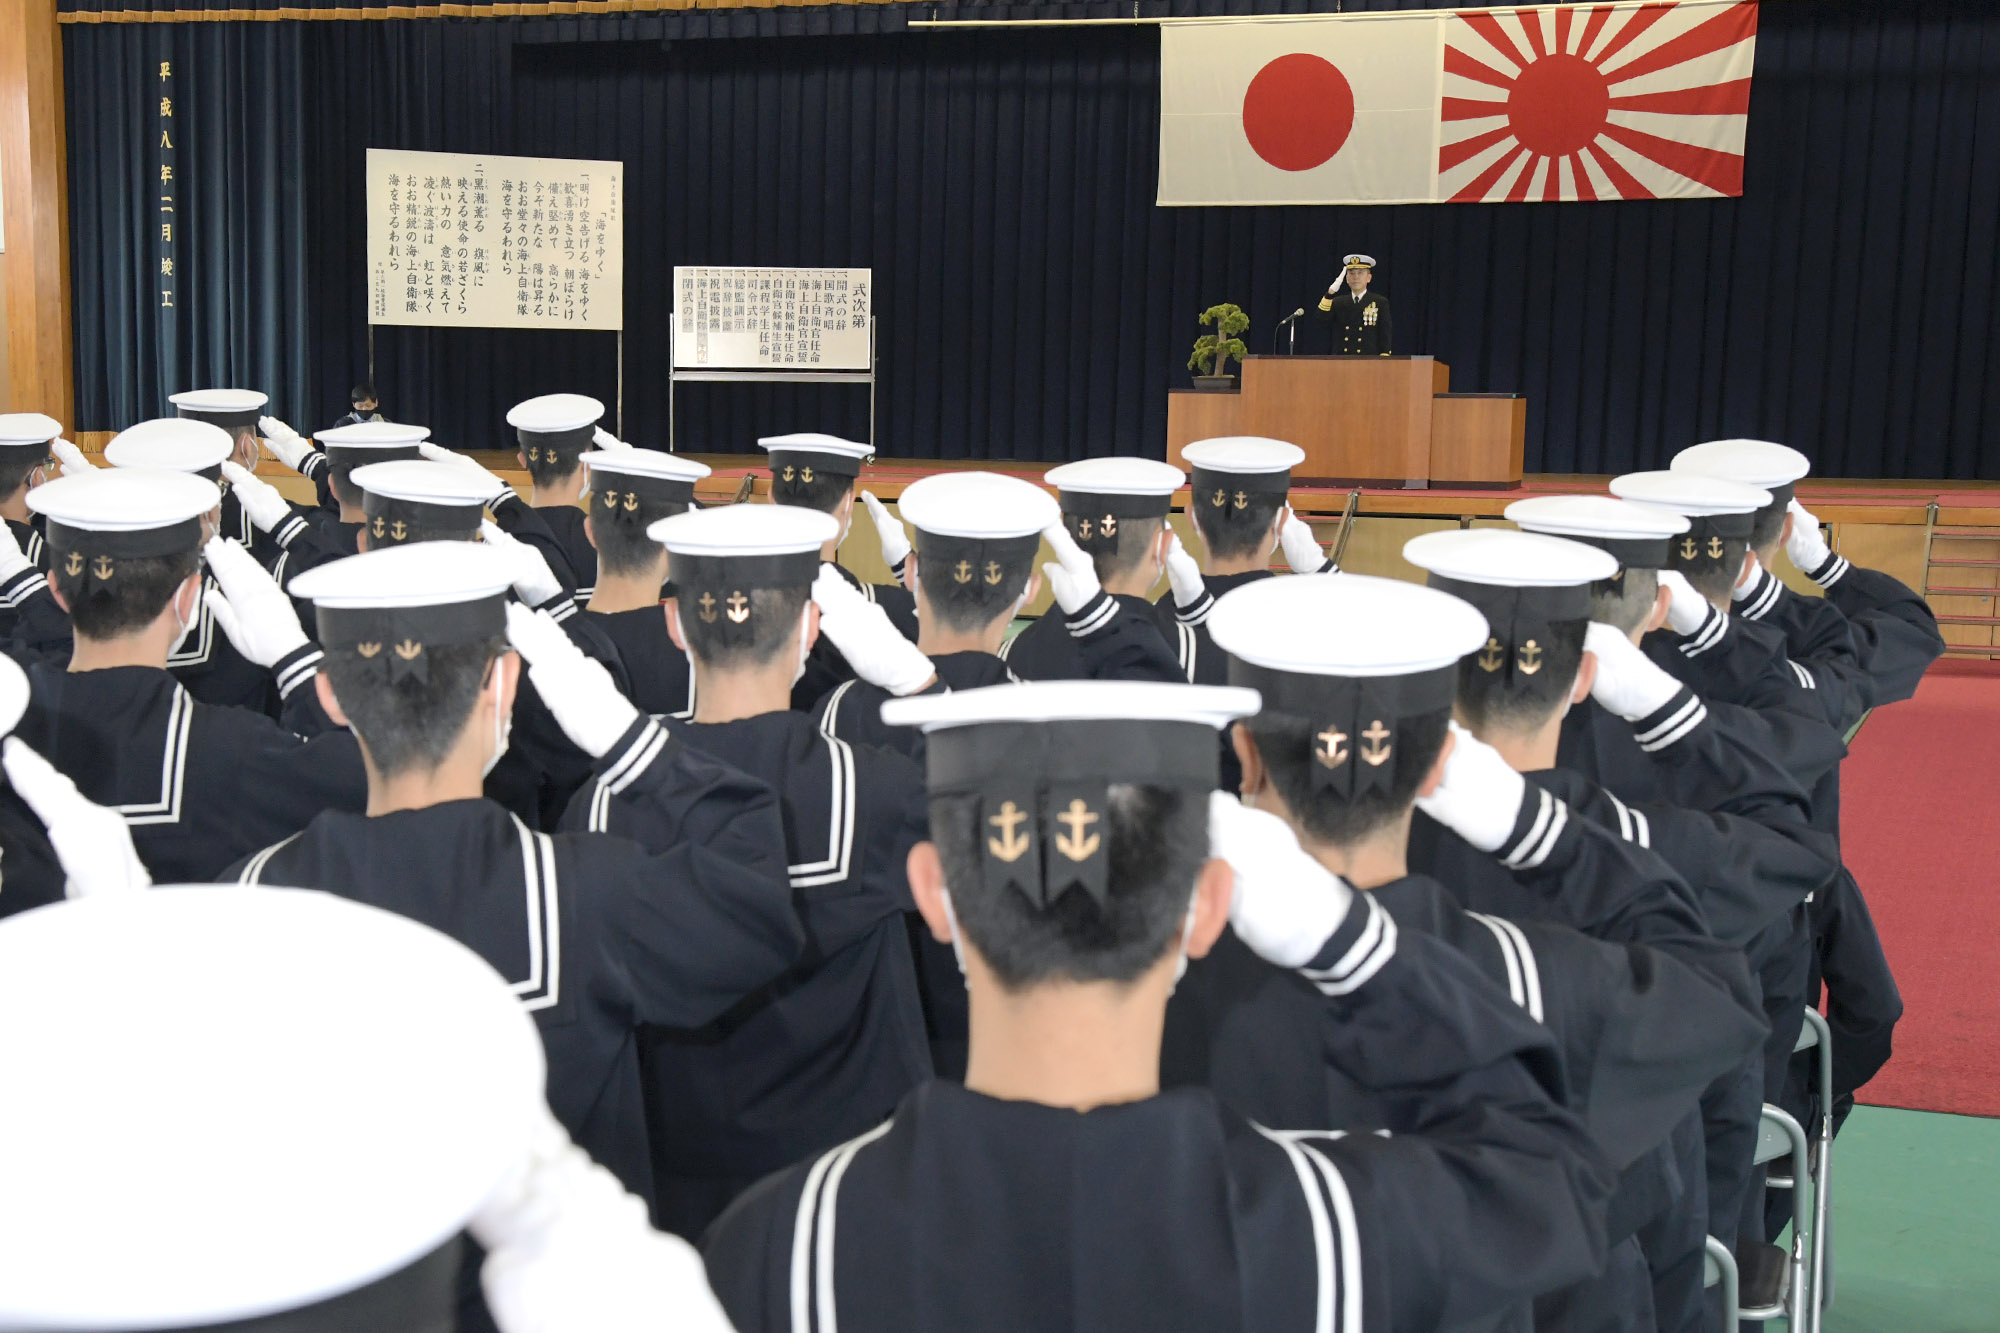 第17期一般海曹候補生課程及び第24期自衛官候補生課程 入隊式